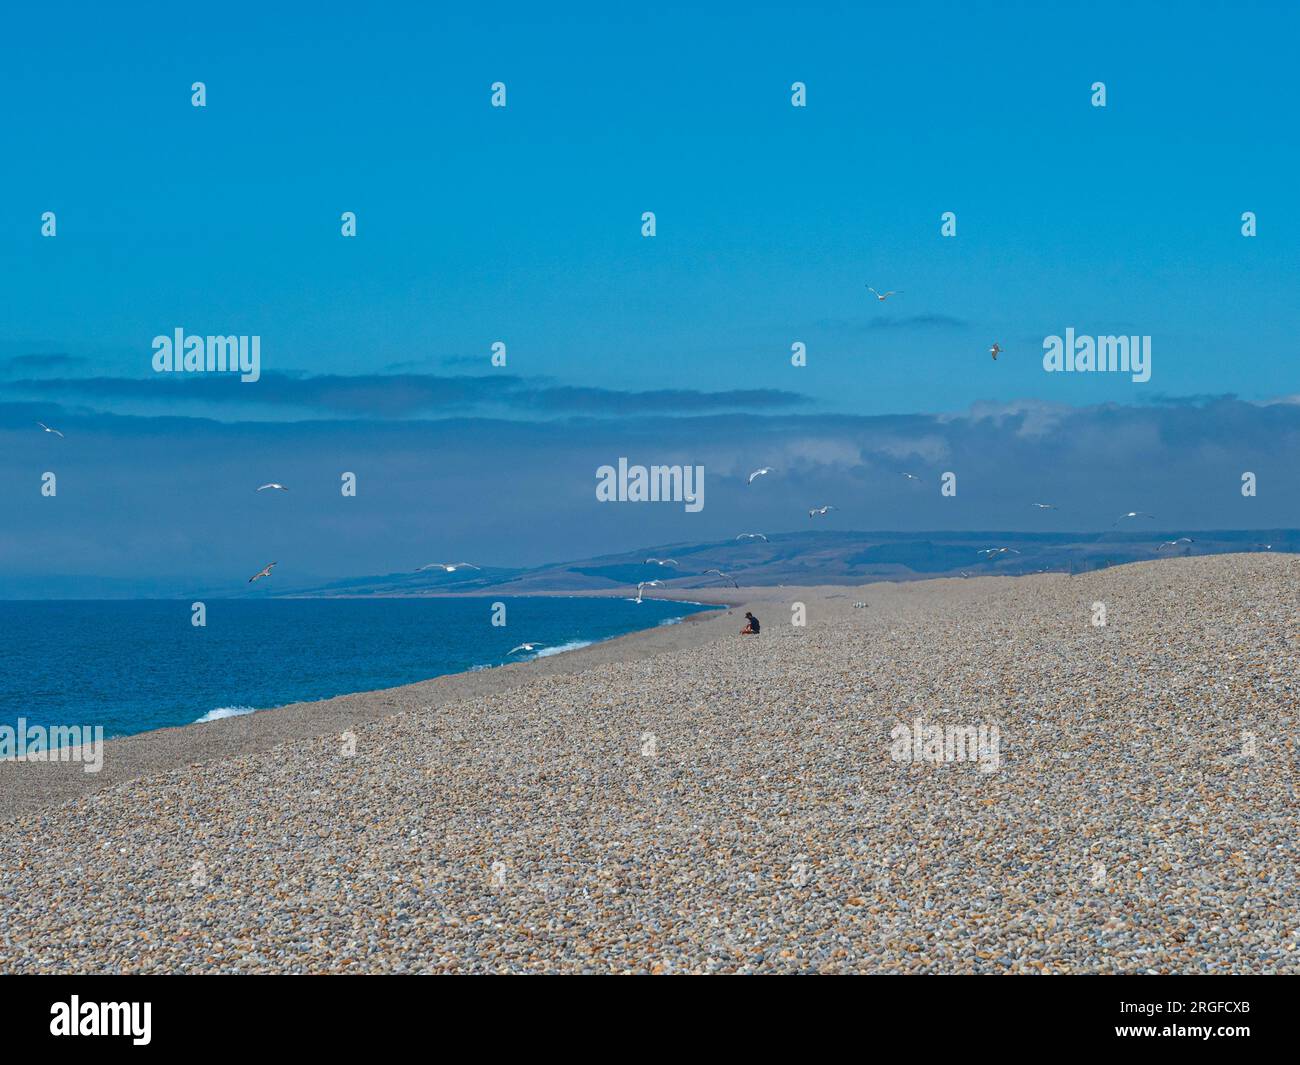 Mouettes volantes et personne assise sur la vaste étendue de plage de galets, plage de Chesil, sur la côte sud-ouest de l'Angleterre, Dorset, Angleterre, Royaume-Uni. Banque D'Images